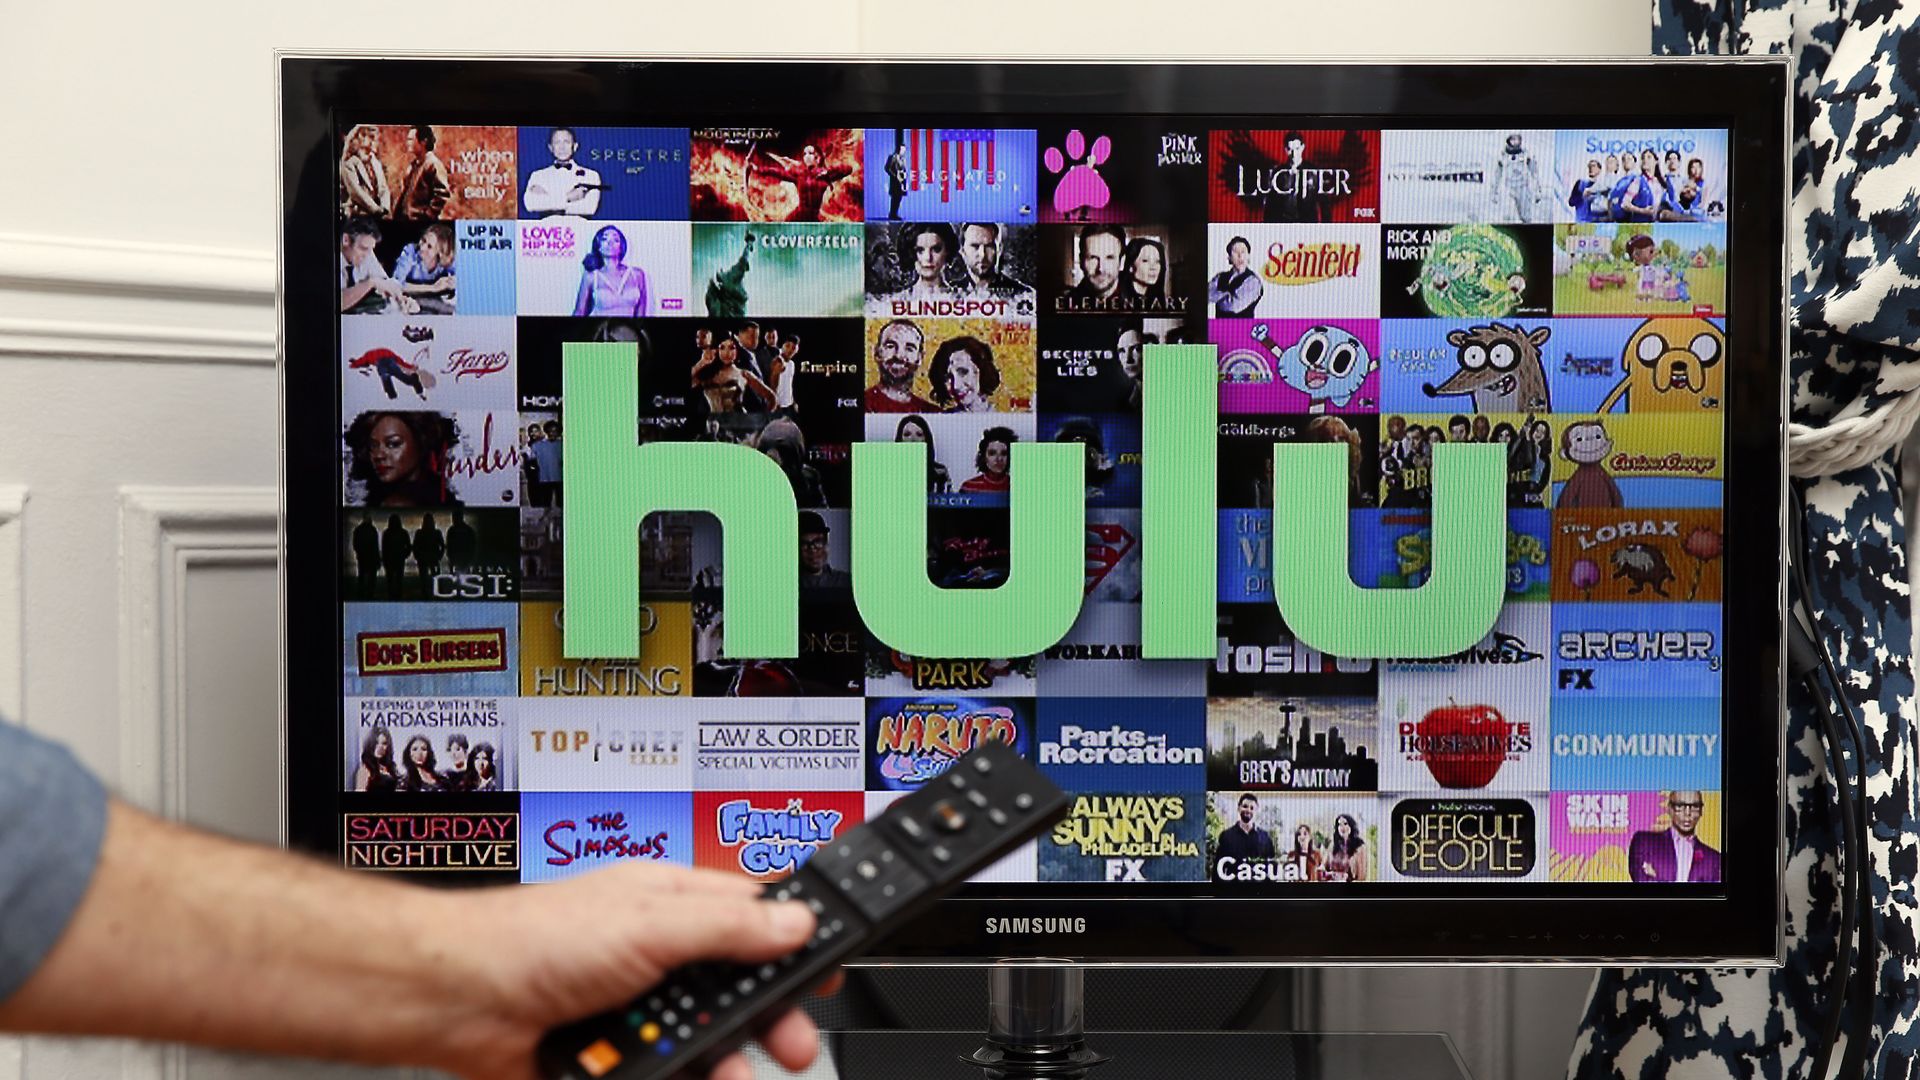 Hulu on the TV